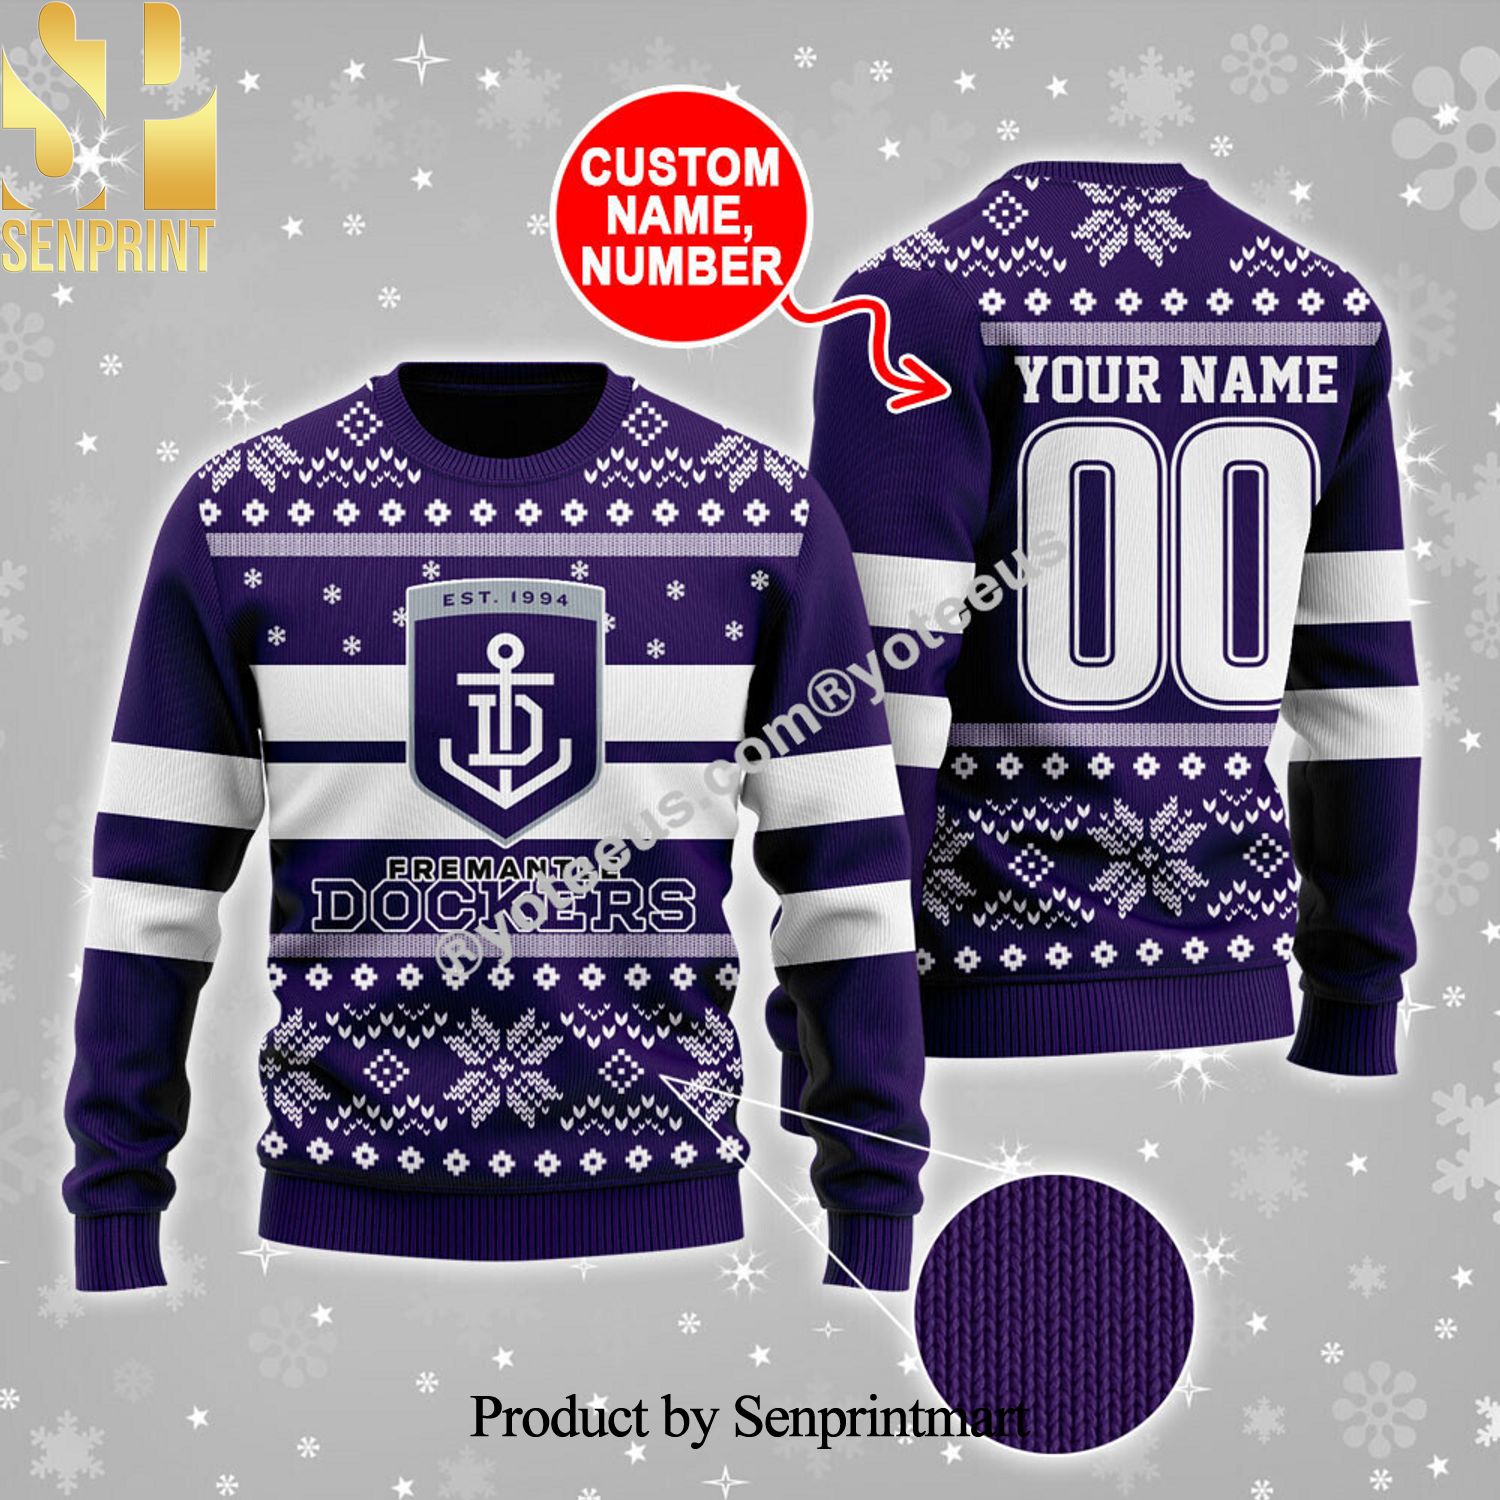 Fremantle Dockers Ugly Christmas Sweater